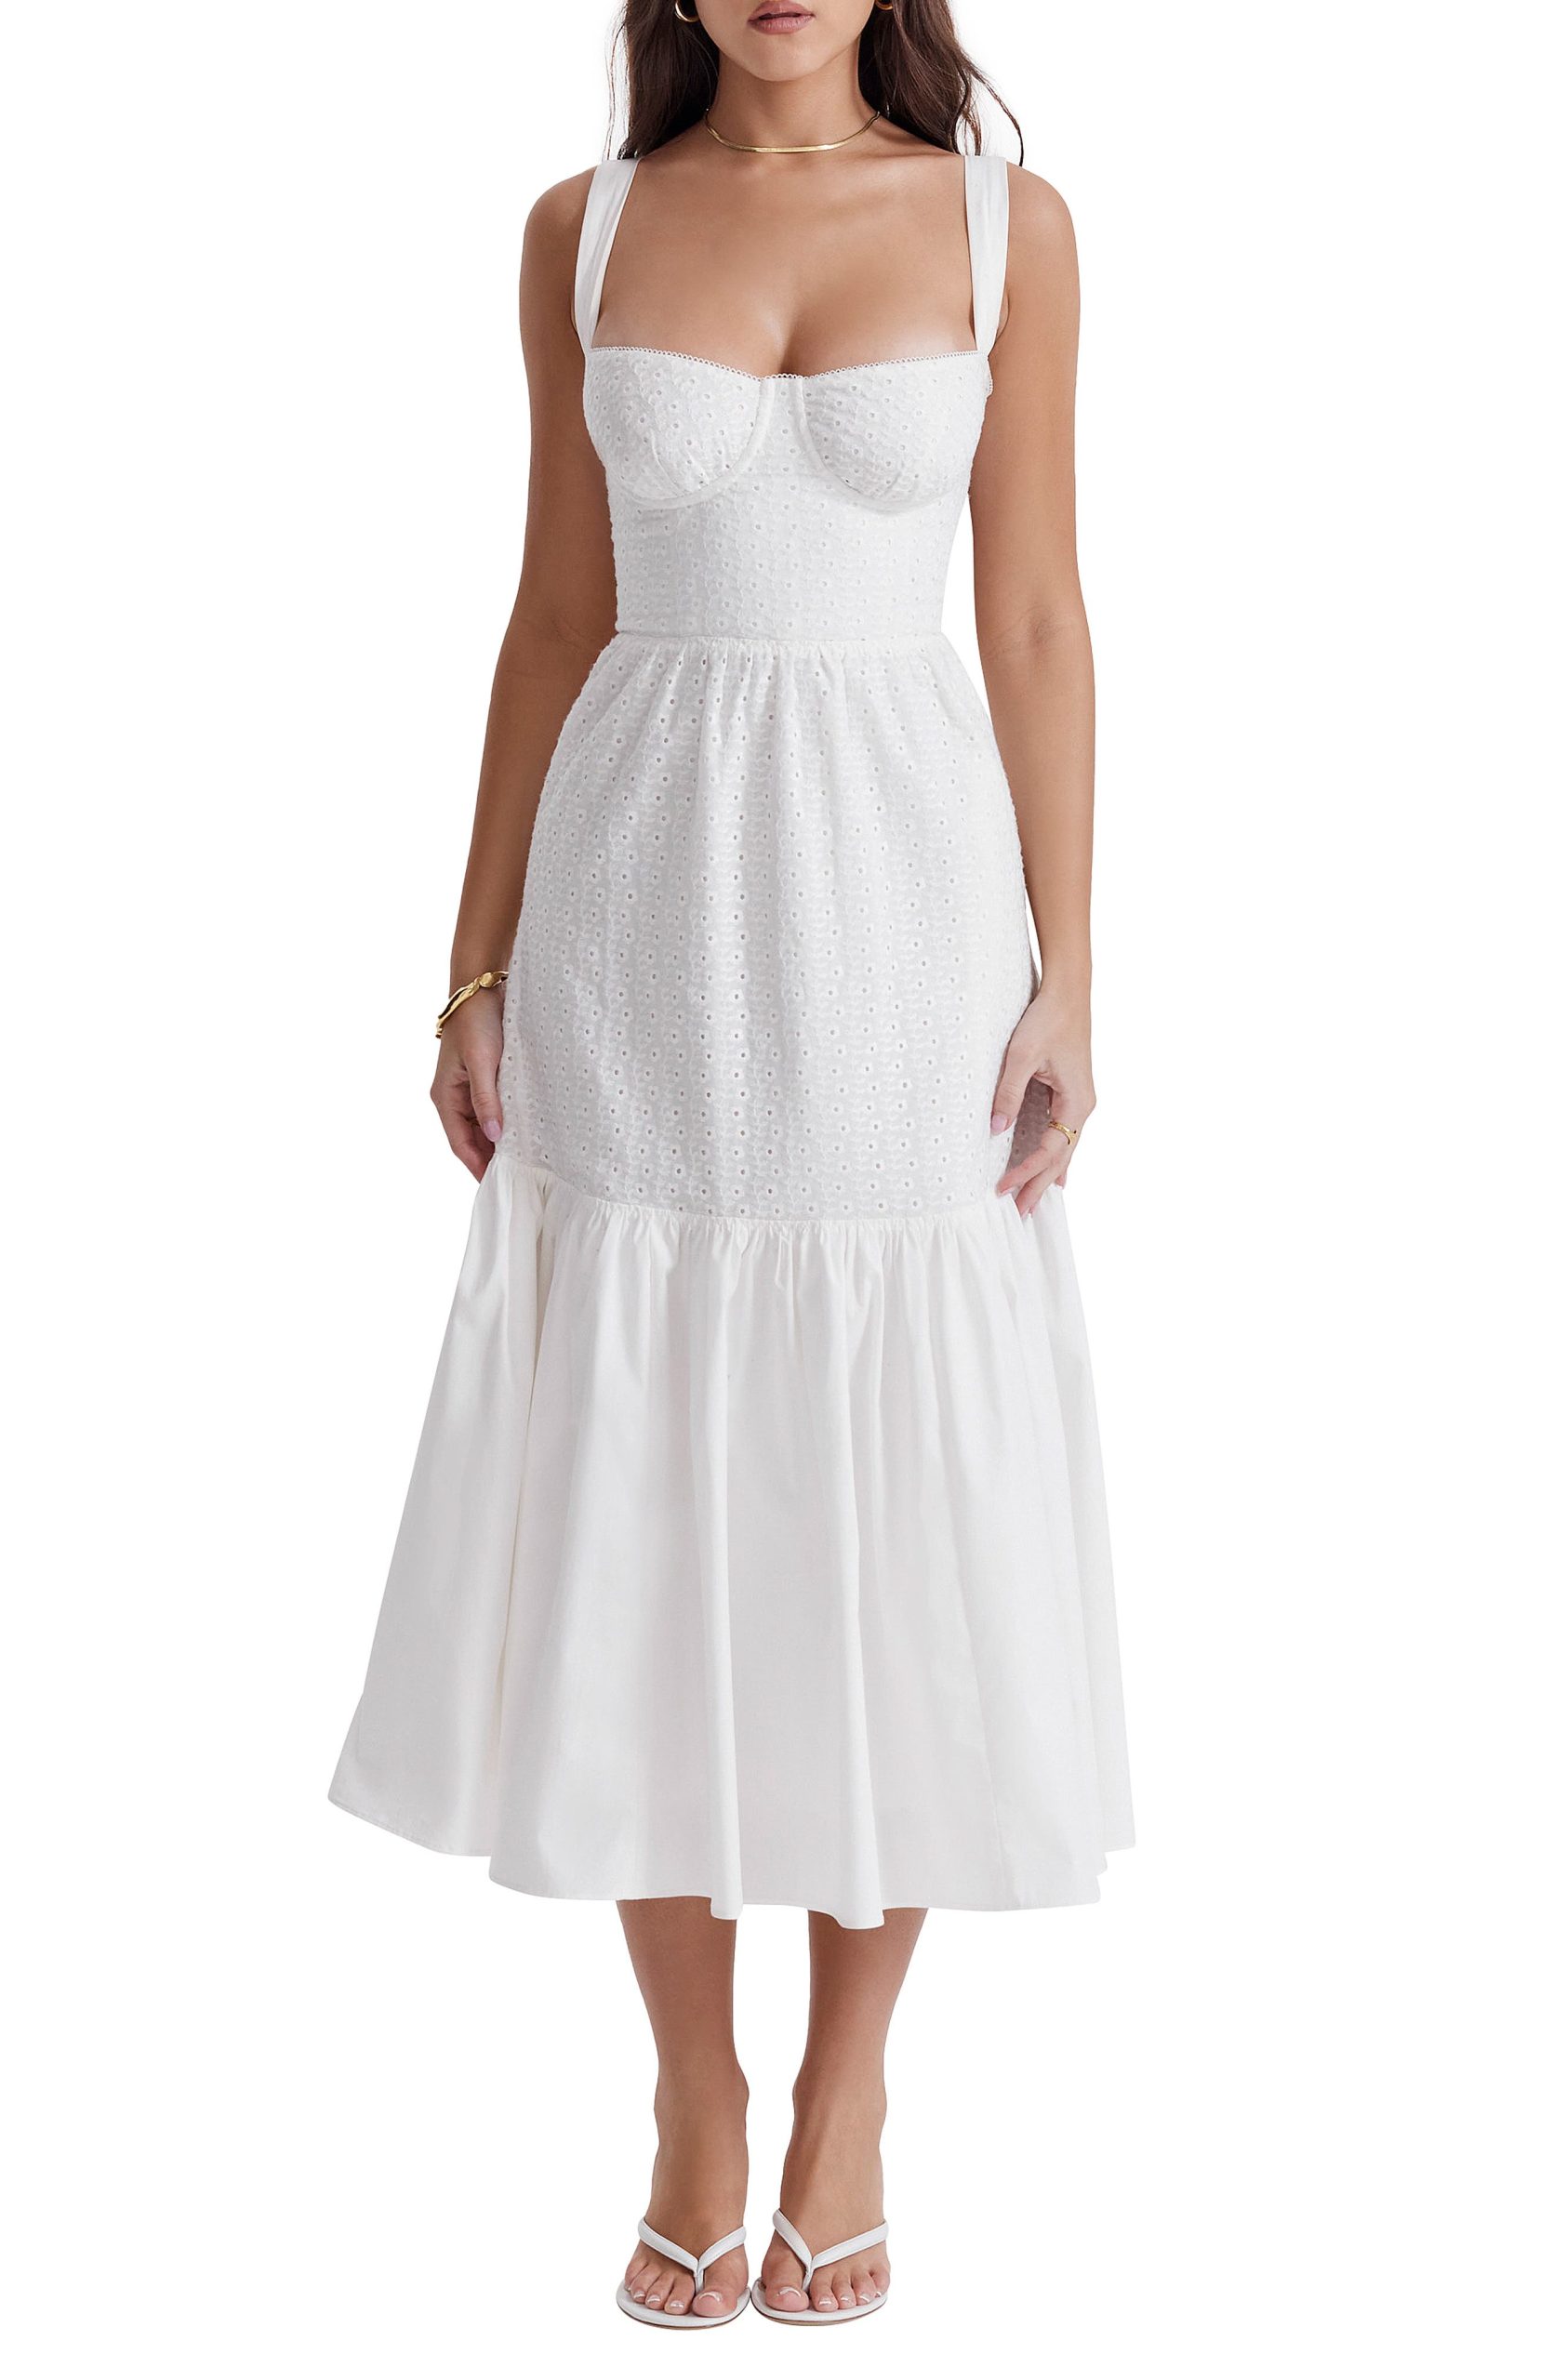 White dresses for women